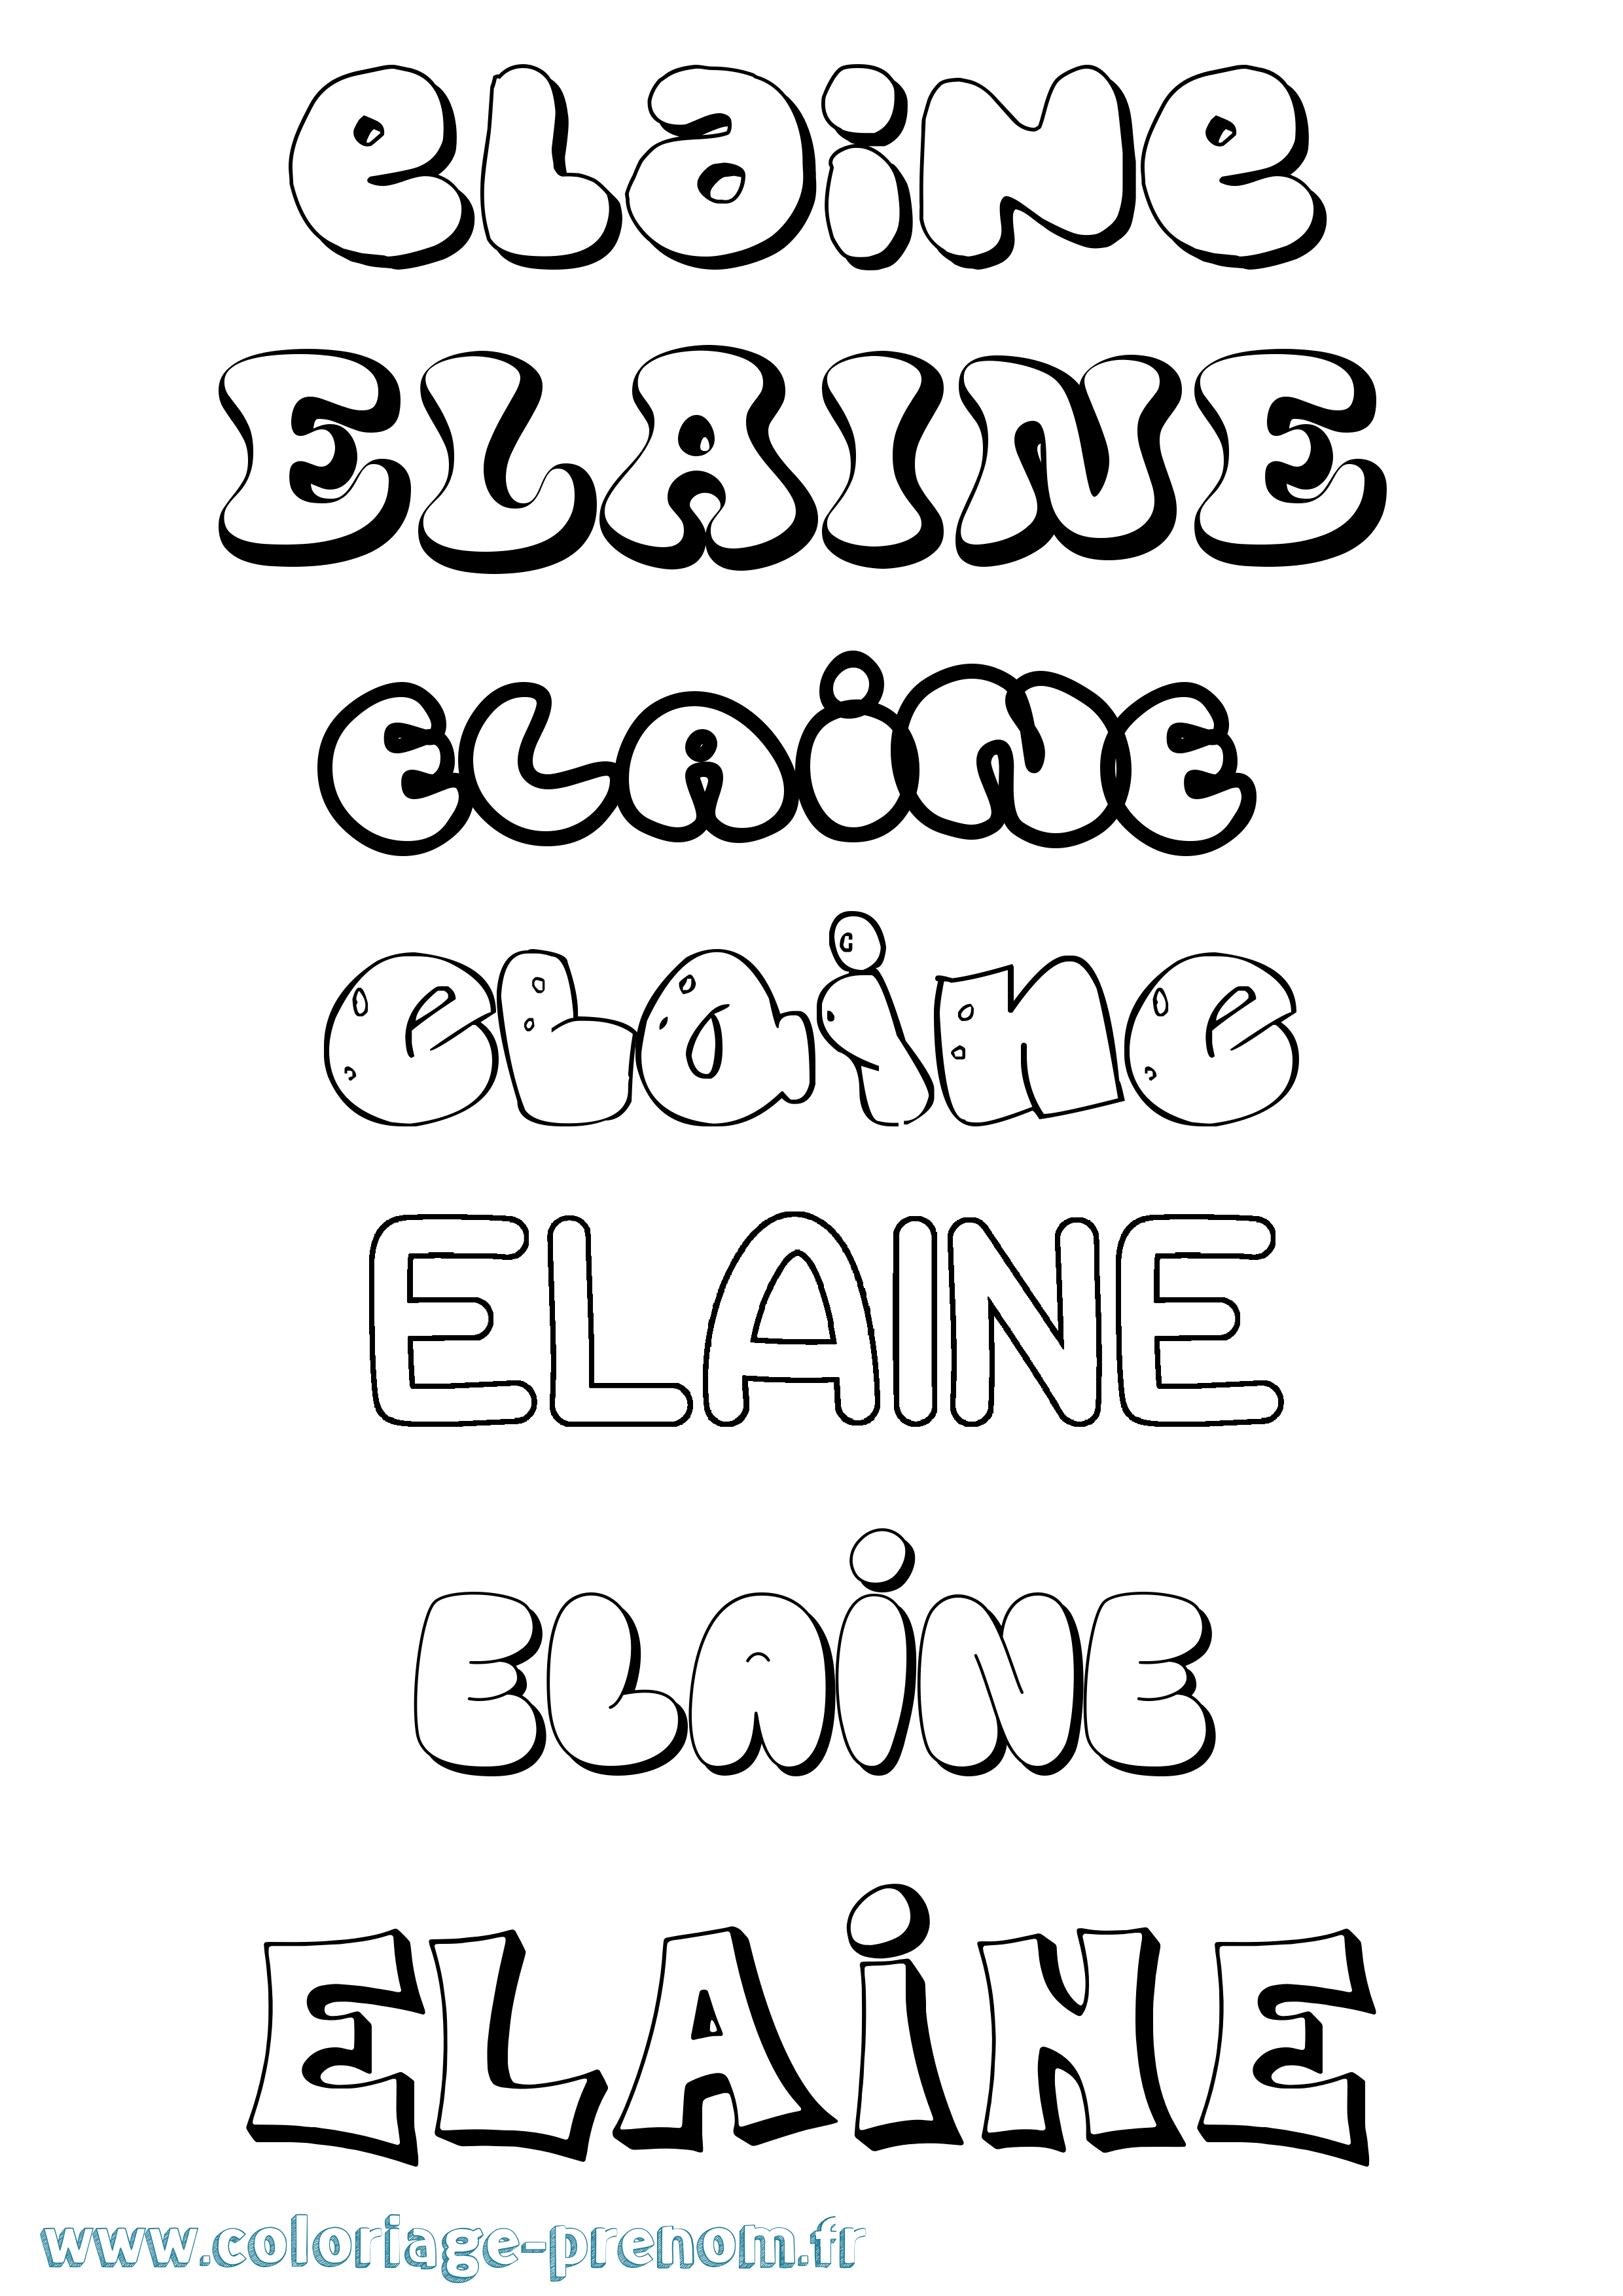 Coloriage prénom Elaine Bubble